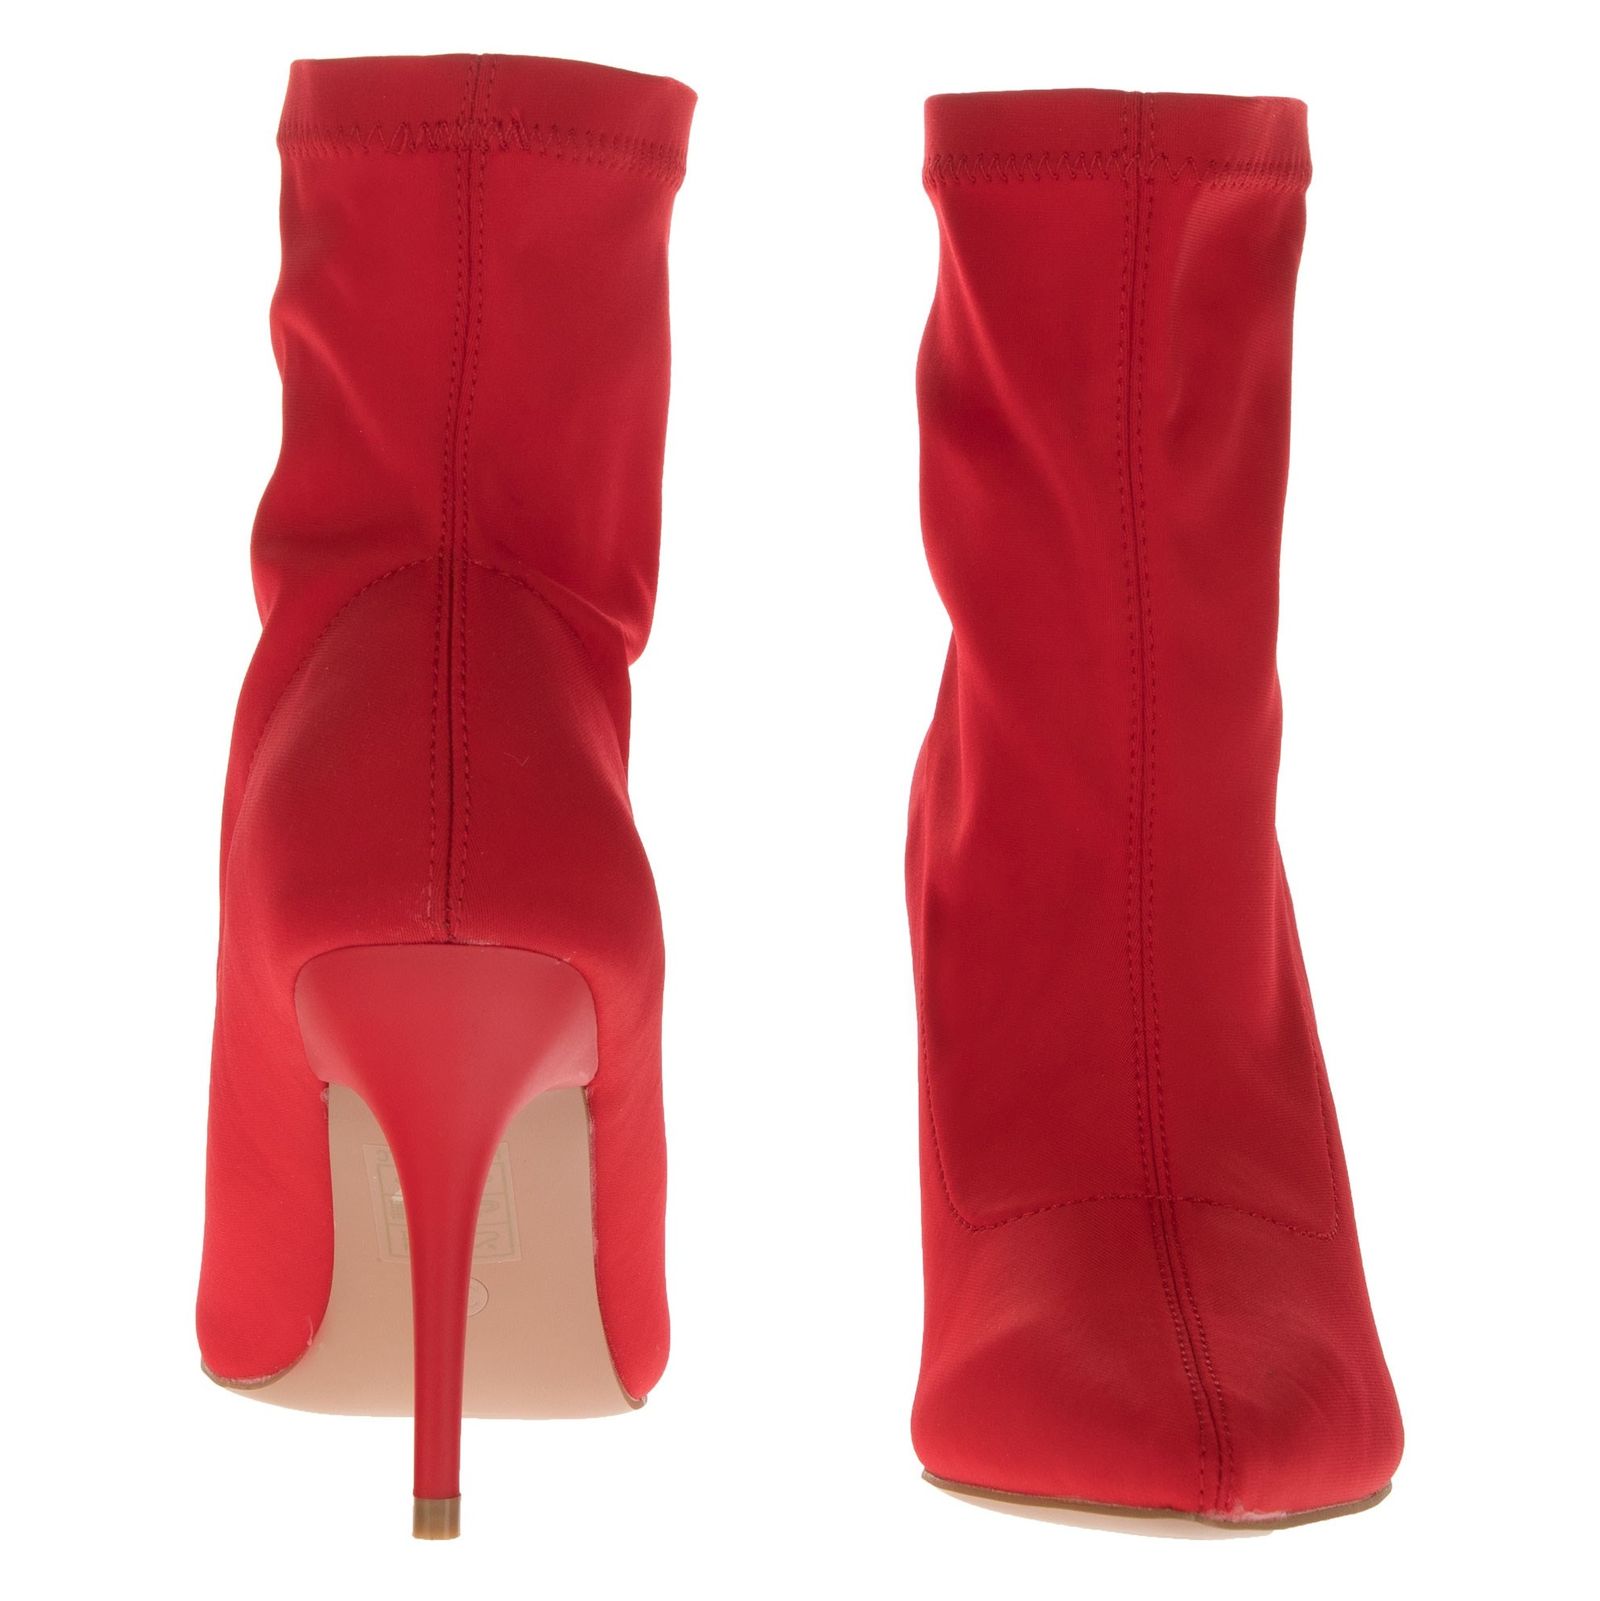 کفش پاشنه بلند زنانه - مالین - قرمز - 5